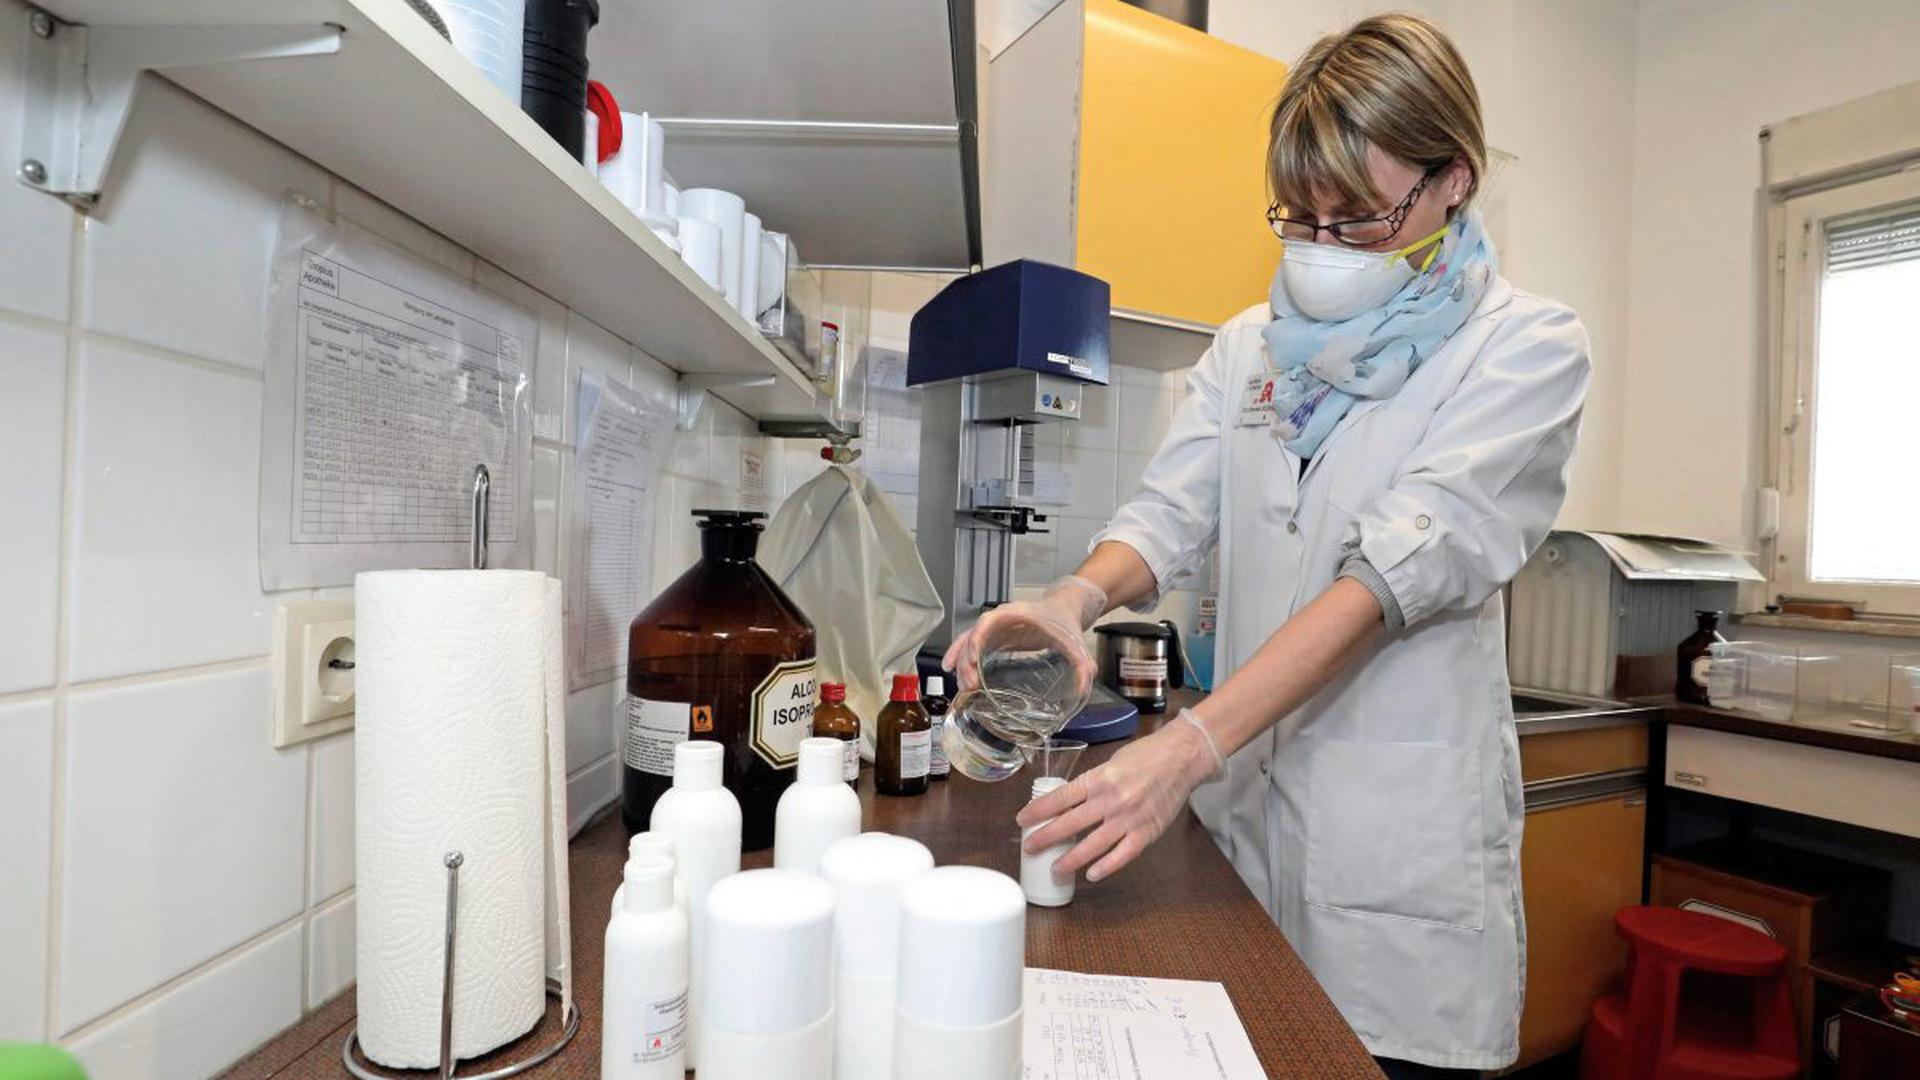 Desinfektionsmittel können Apotheker selbst herstellen – auch PTA Stephanie Köhler ist qualifiziert. Den Mundschutz trägt sie dabei aber nicht wegen des Coronavirus, sondern um die Rezeptur nicht zu verunreinigen.